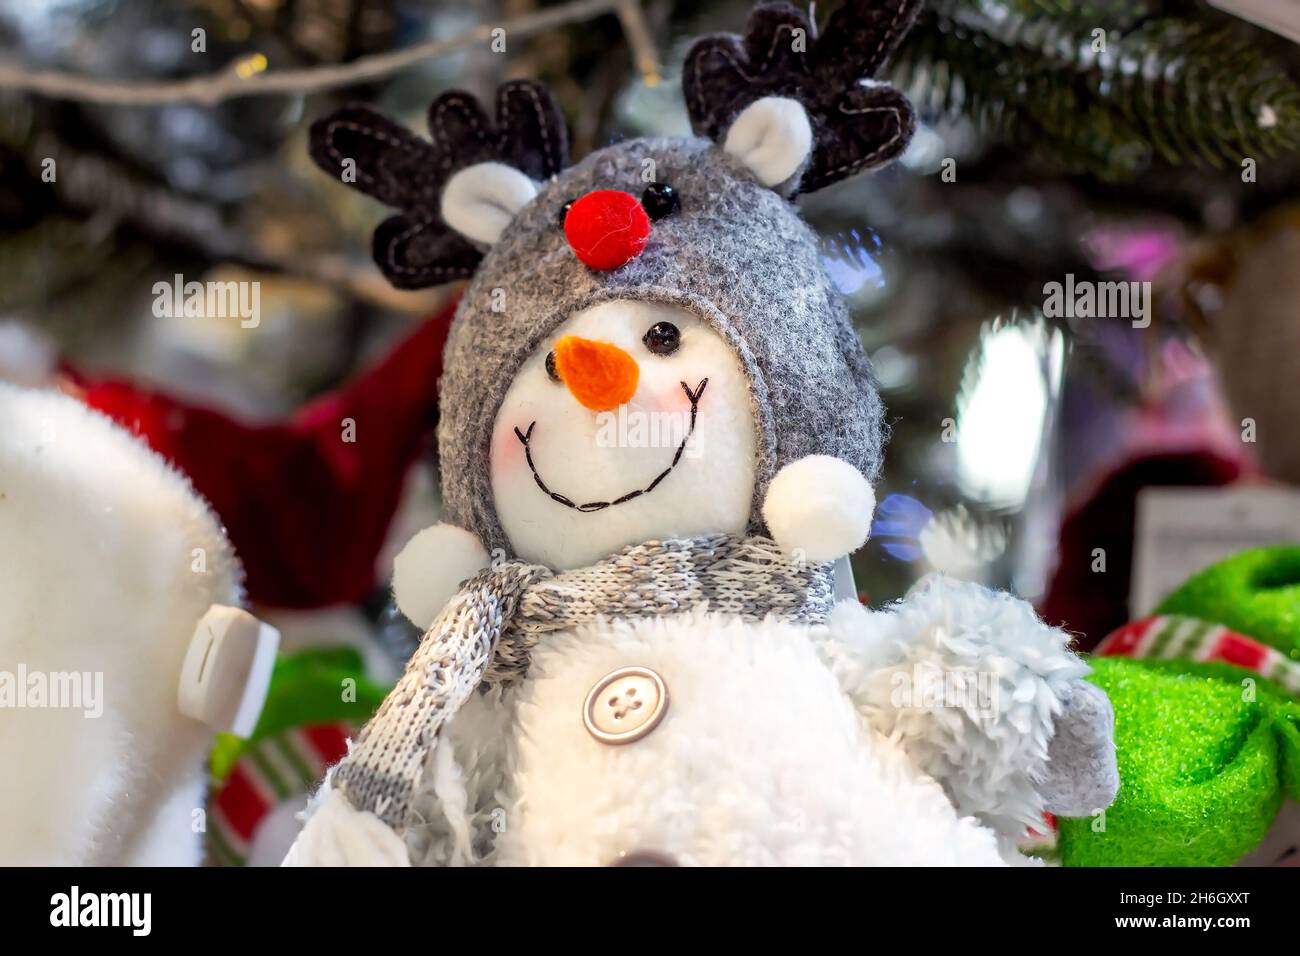 Bonhomme de neige en peluche coloré sur l'étagère de la boutique.Concept de fête de Noël et du nouvel an. Banque D'Images